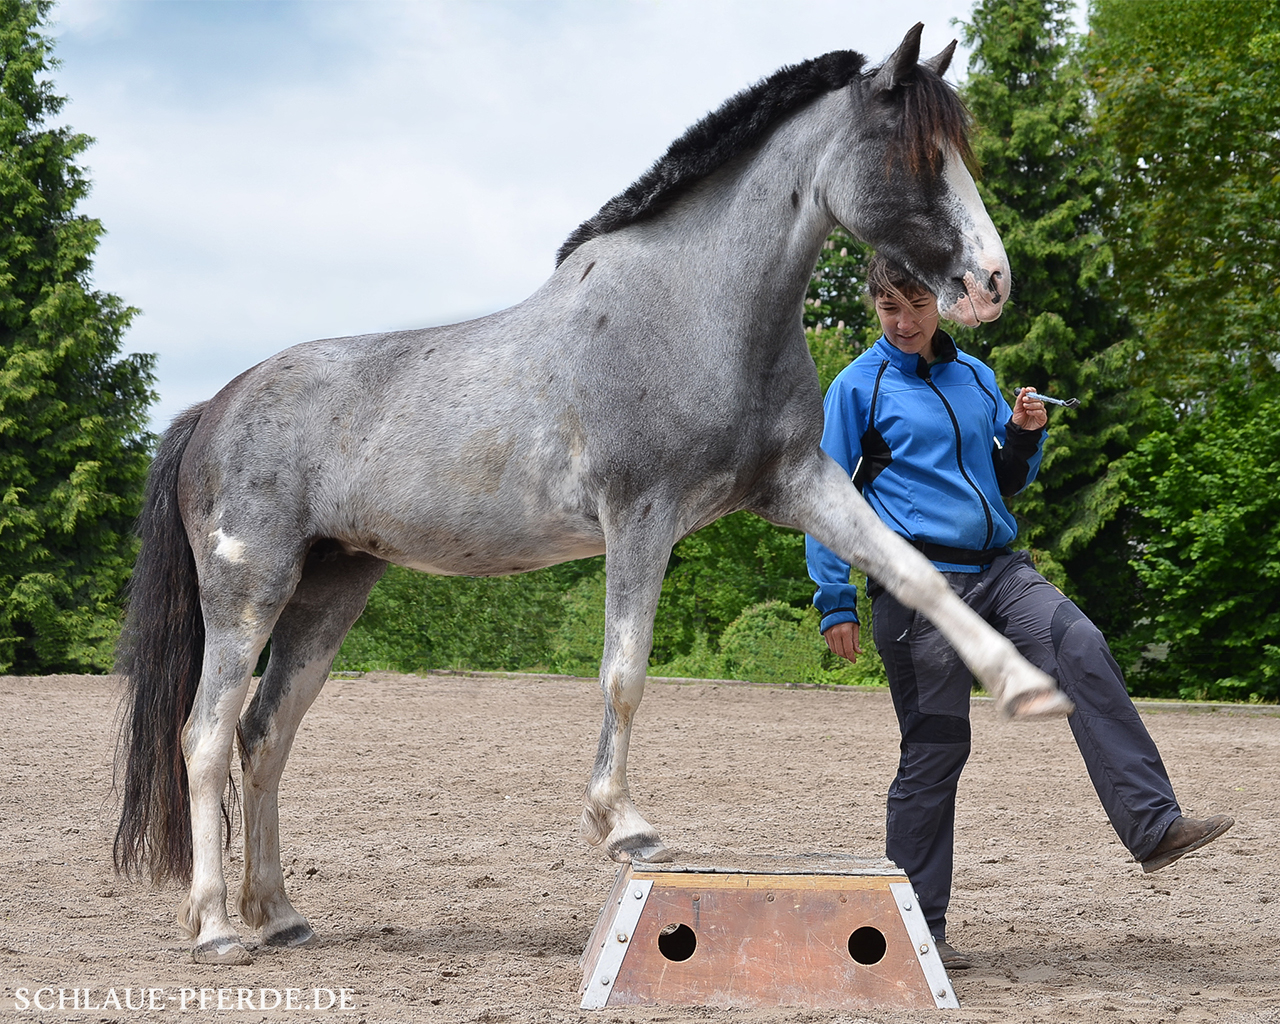 Zirkuslektion, Zirzensische Lektion, Zirkustrick: Pferd auf Podest